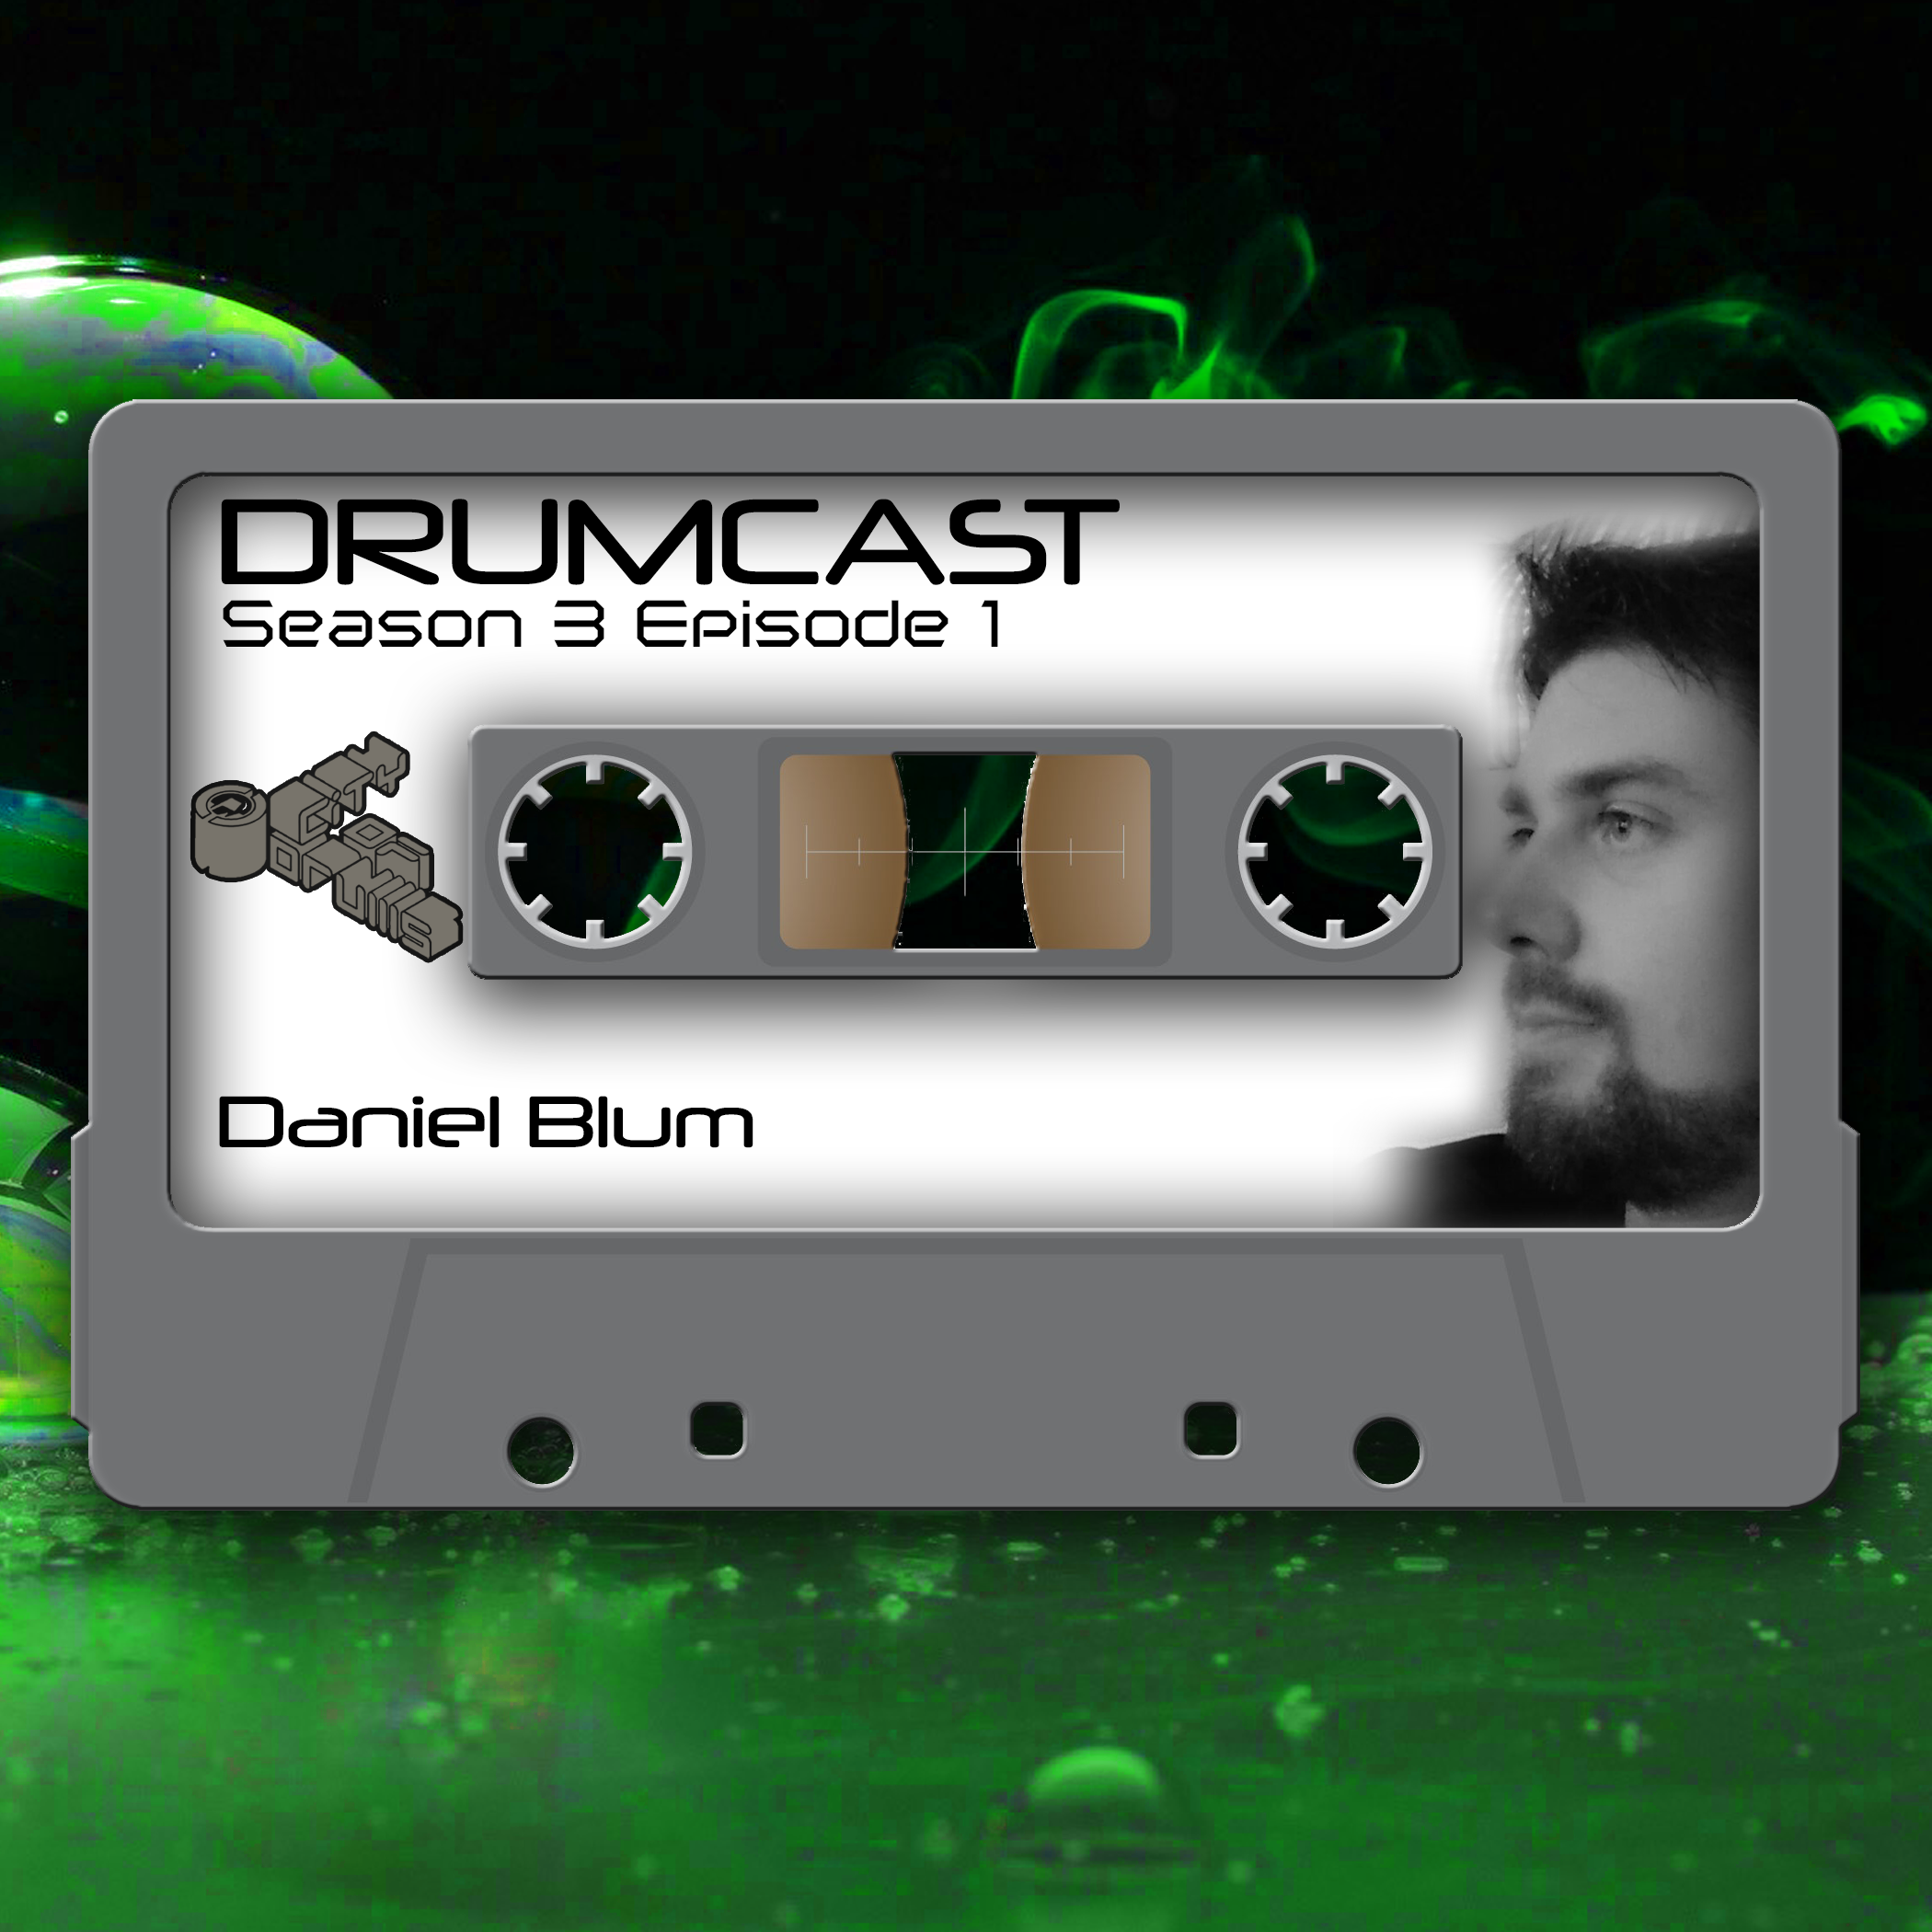 DRUMCAST Season 3 Episode 1 mit Daniel Blum! 15